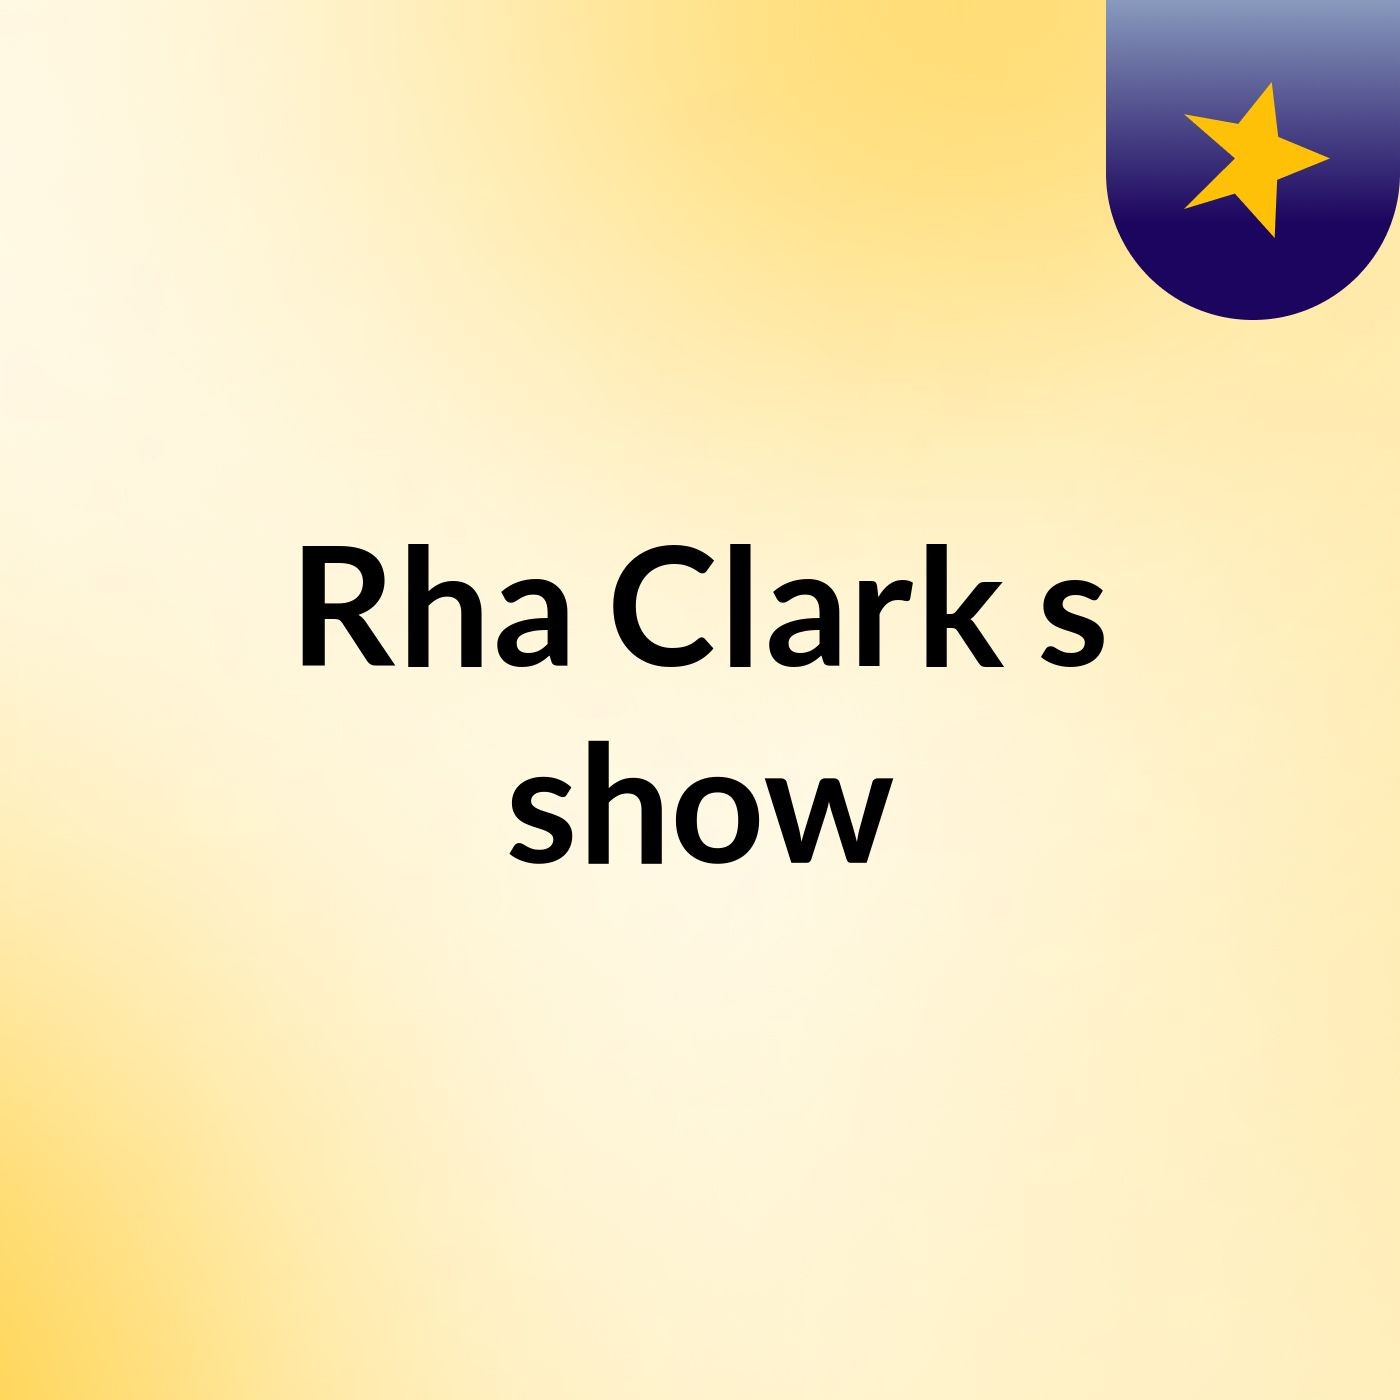 Rha Clark's show